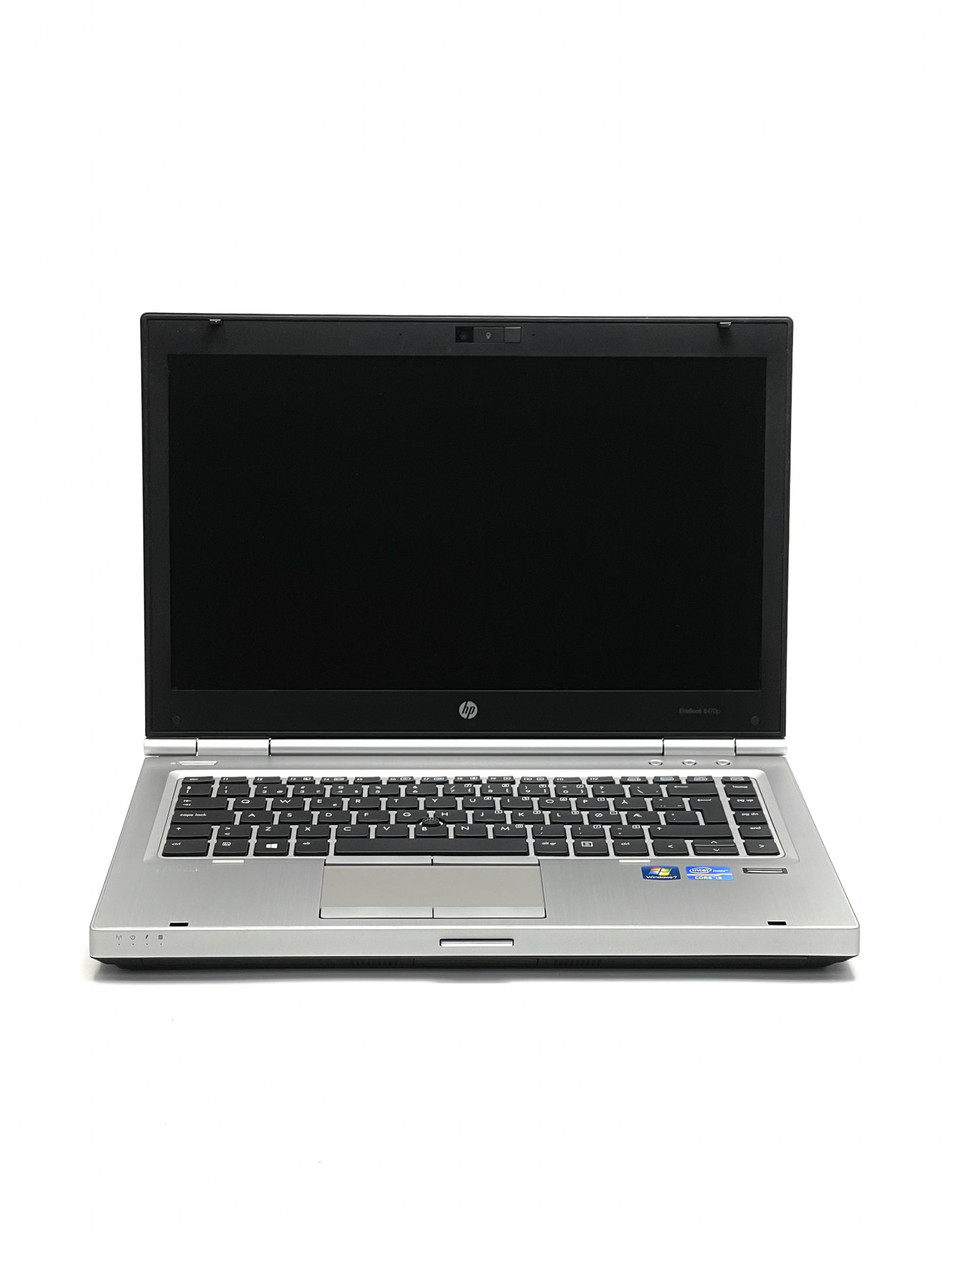 Ноутбук HP EliteBook 8470p 14 Intel Core i5 8 Гб 120 Гб Refurbished